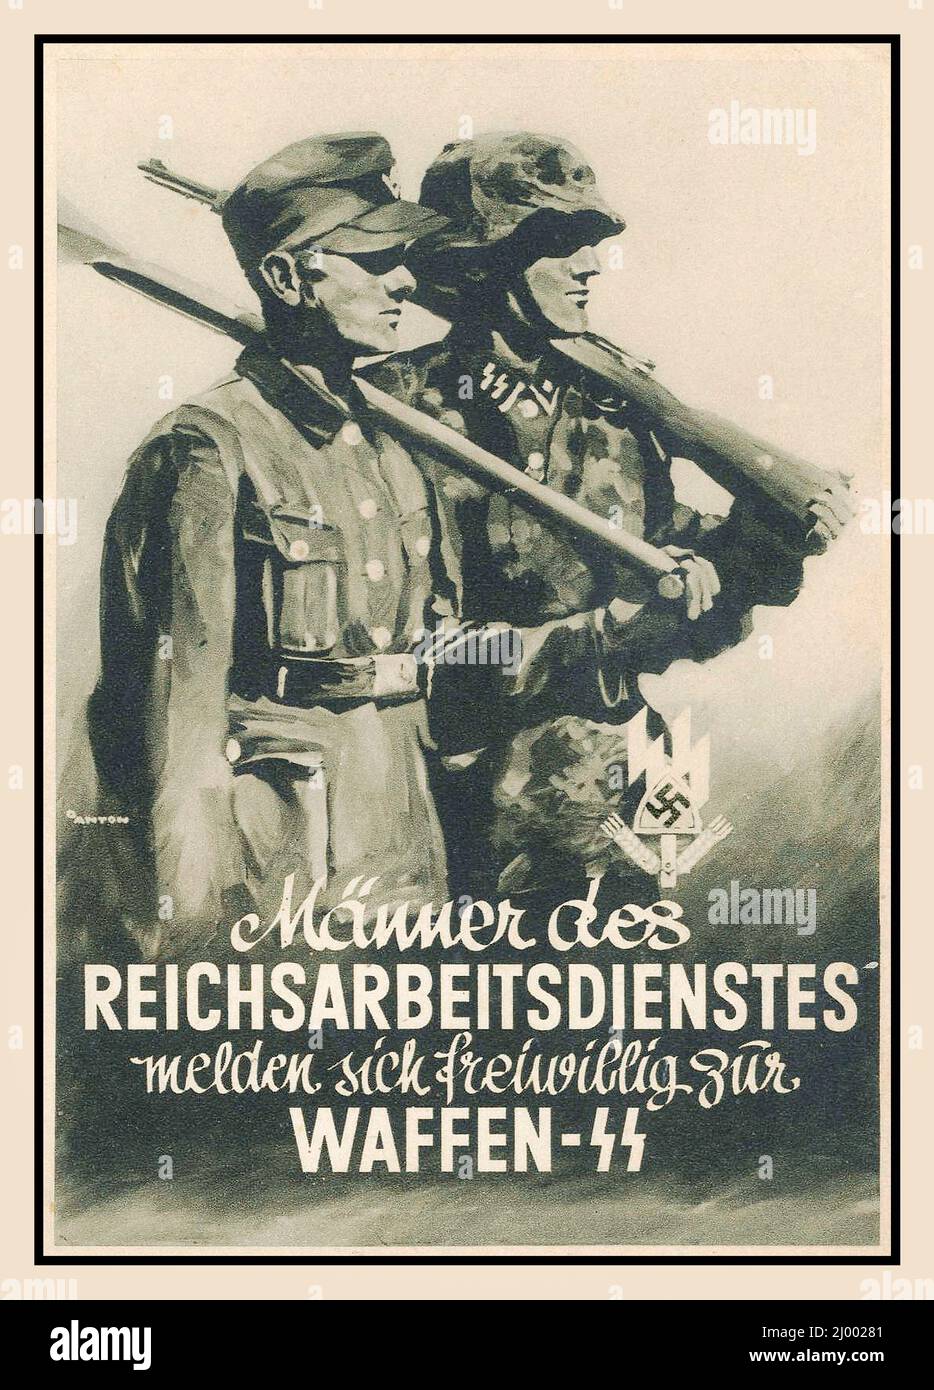 WAFFEN SS 1942 Nazi Vintage Poster Propaganda Recruitment German male volunteers working in service voluntarily to the Nazi Waffen SS 1942 MÄNNER DES REICHSARBEITSDIENSTES MELDEN SICH FREIWILLIG ZUR WAFFEN-SS World War II Second World War WW2 Stock Photo